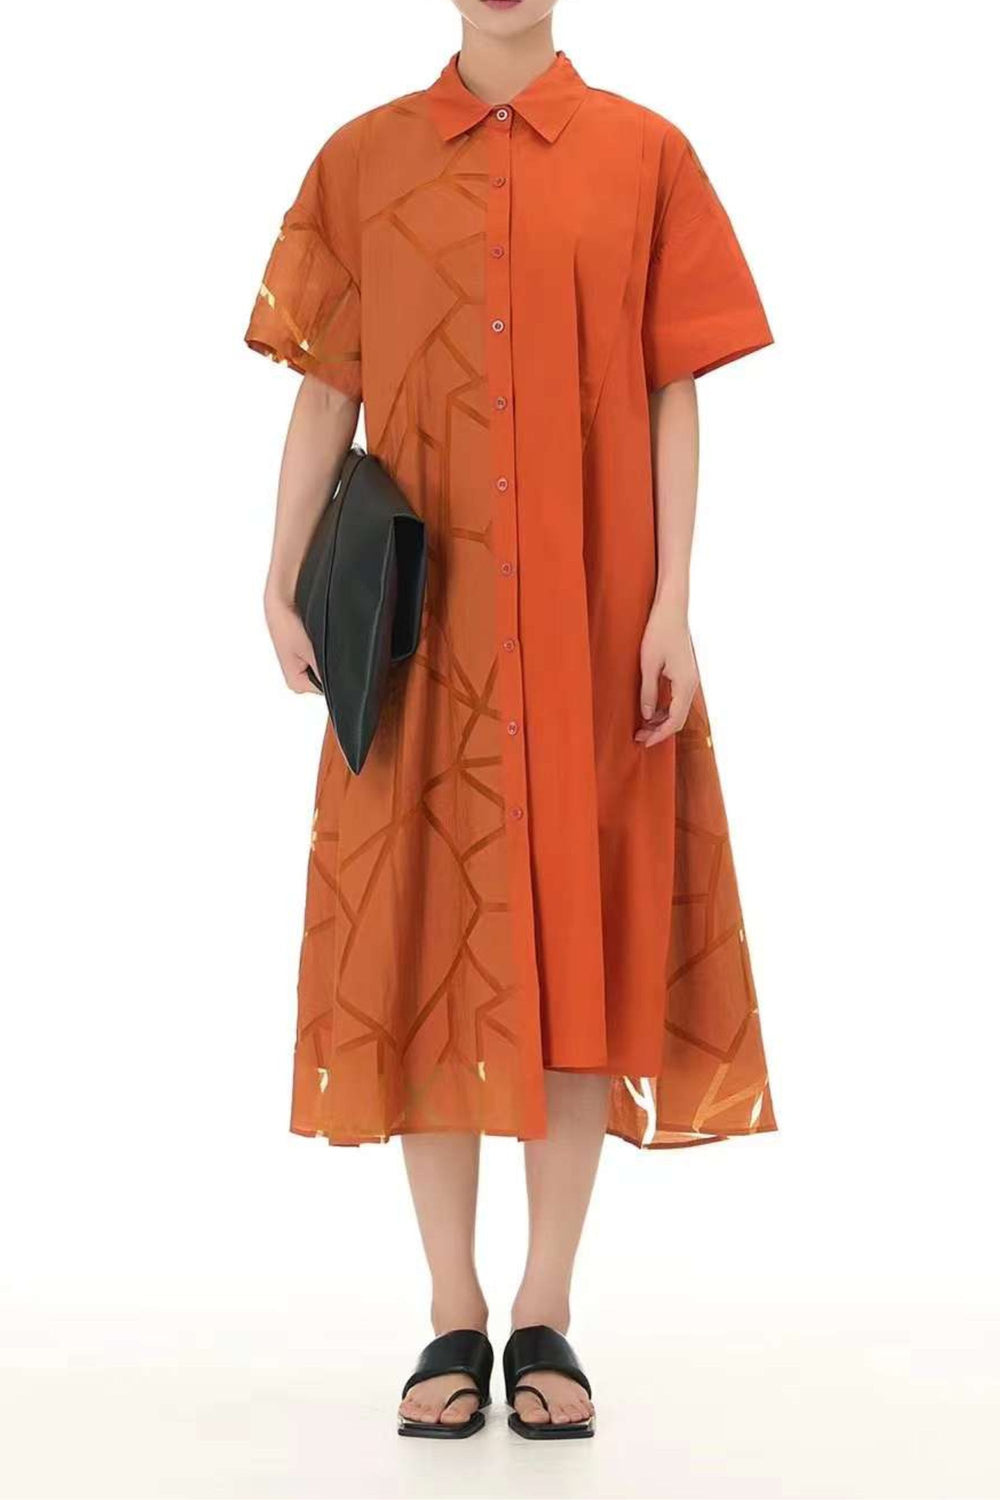 Oversized orange shirt dress for women